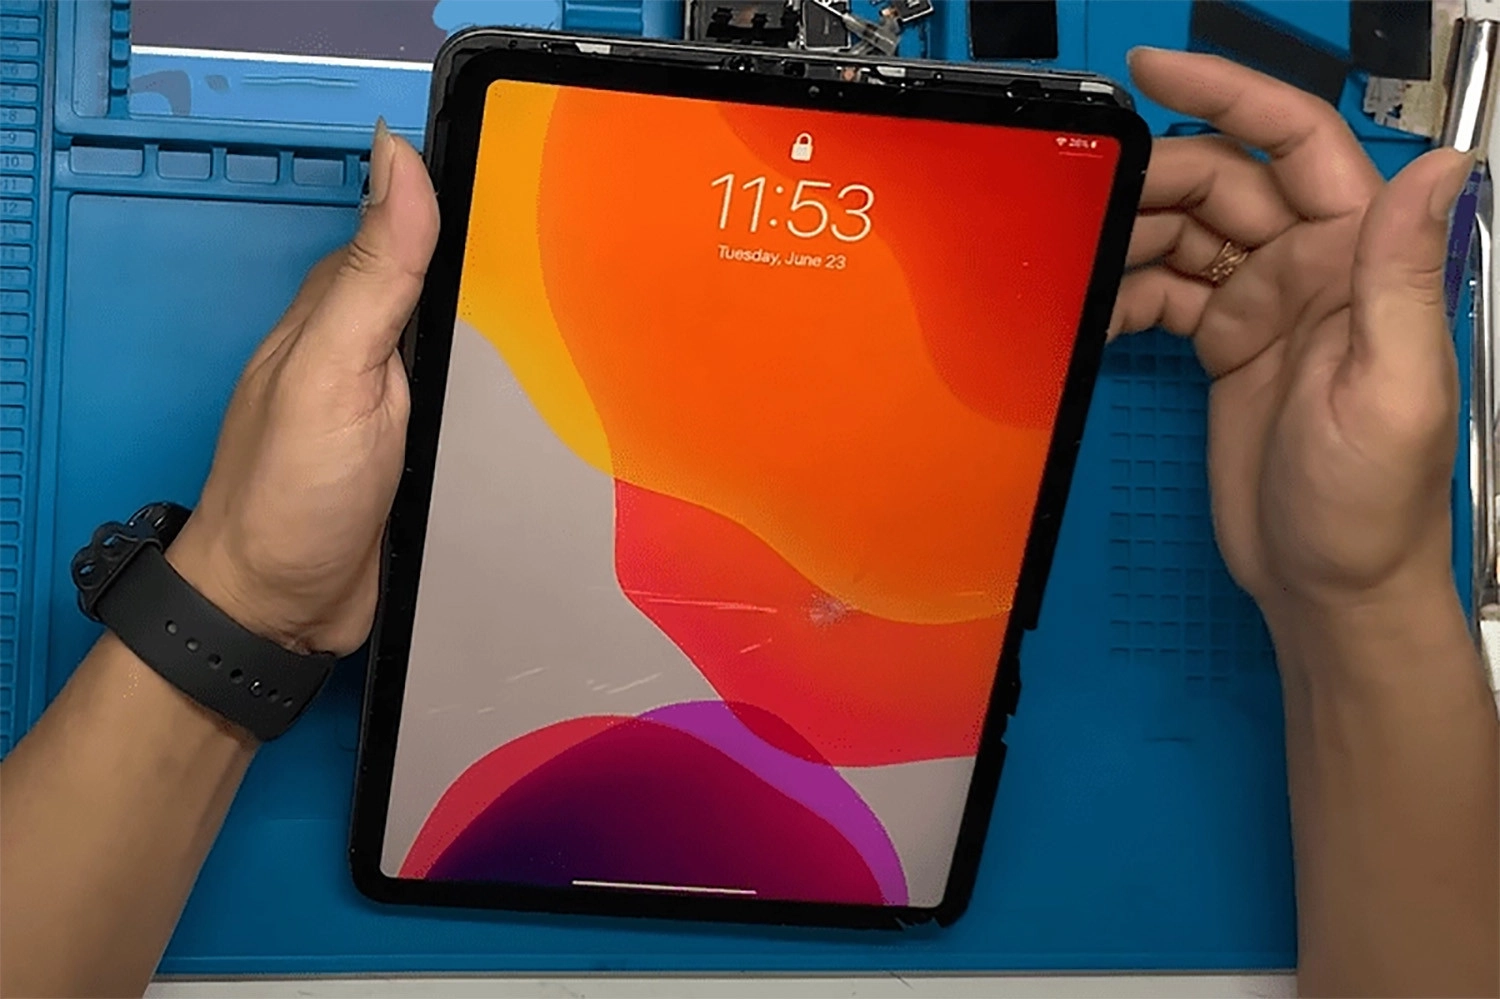 Thay mặt kính iPad Pro 11 inch 2020 giá bao nhiêu tiền?